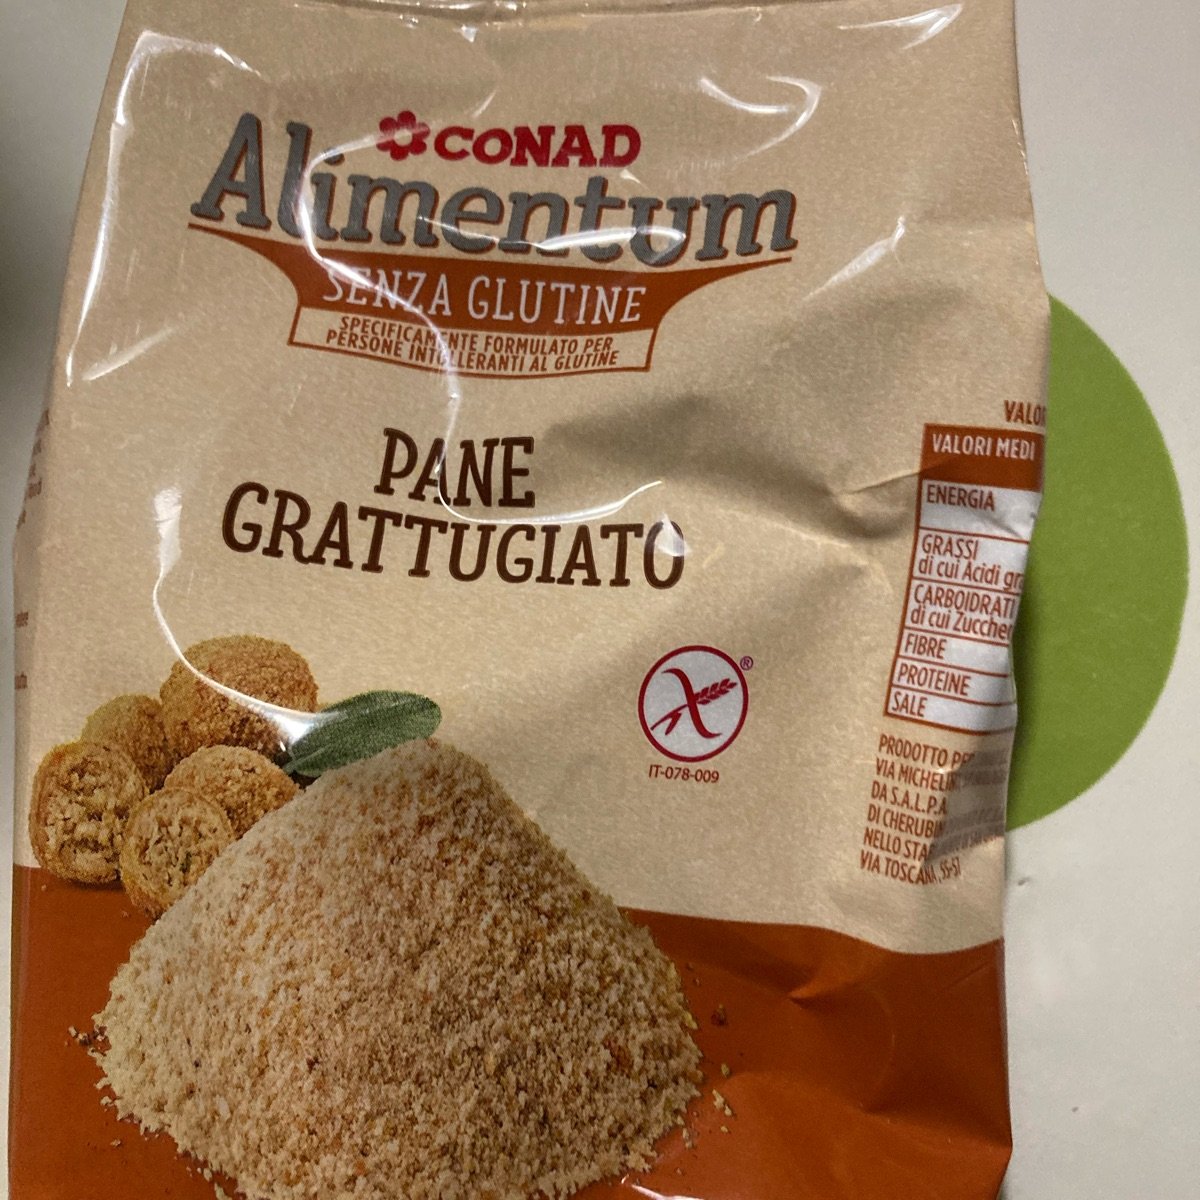 Conad Pane Grattugiato - Senza glutine Reviews